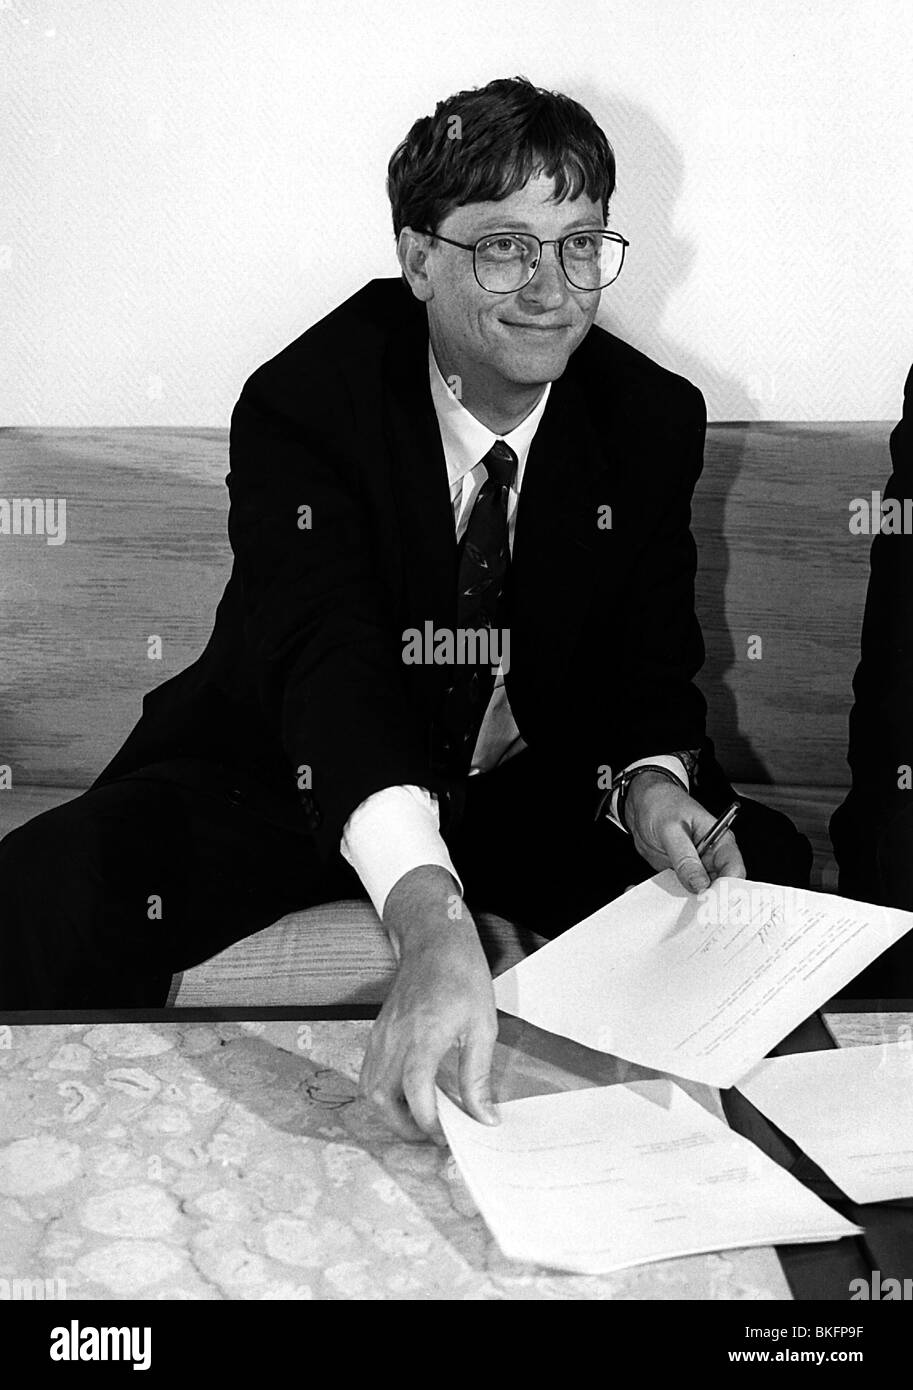 Gates, William Henry 'Bill', * 28.10.1955, magnat américain des affaires, fondateur de LA société MICROSOFT, demi-longueur, 1992, Banque D'Images